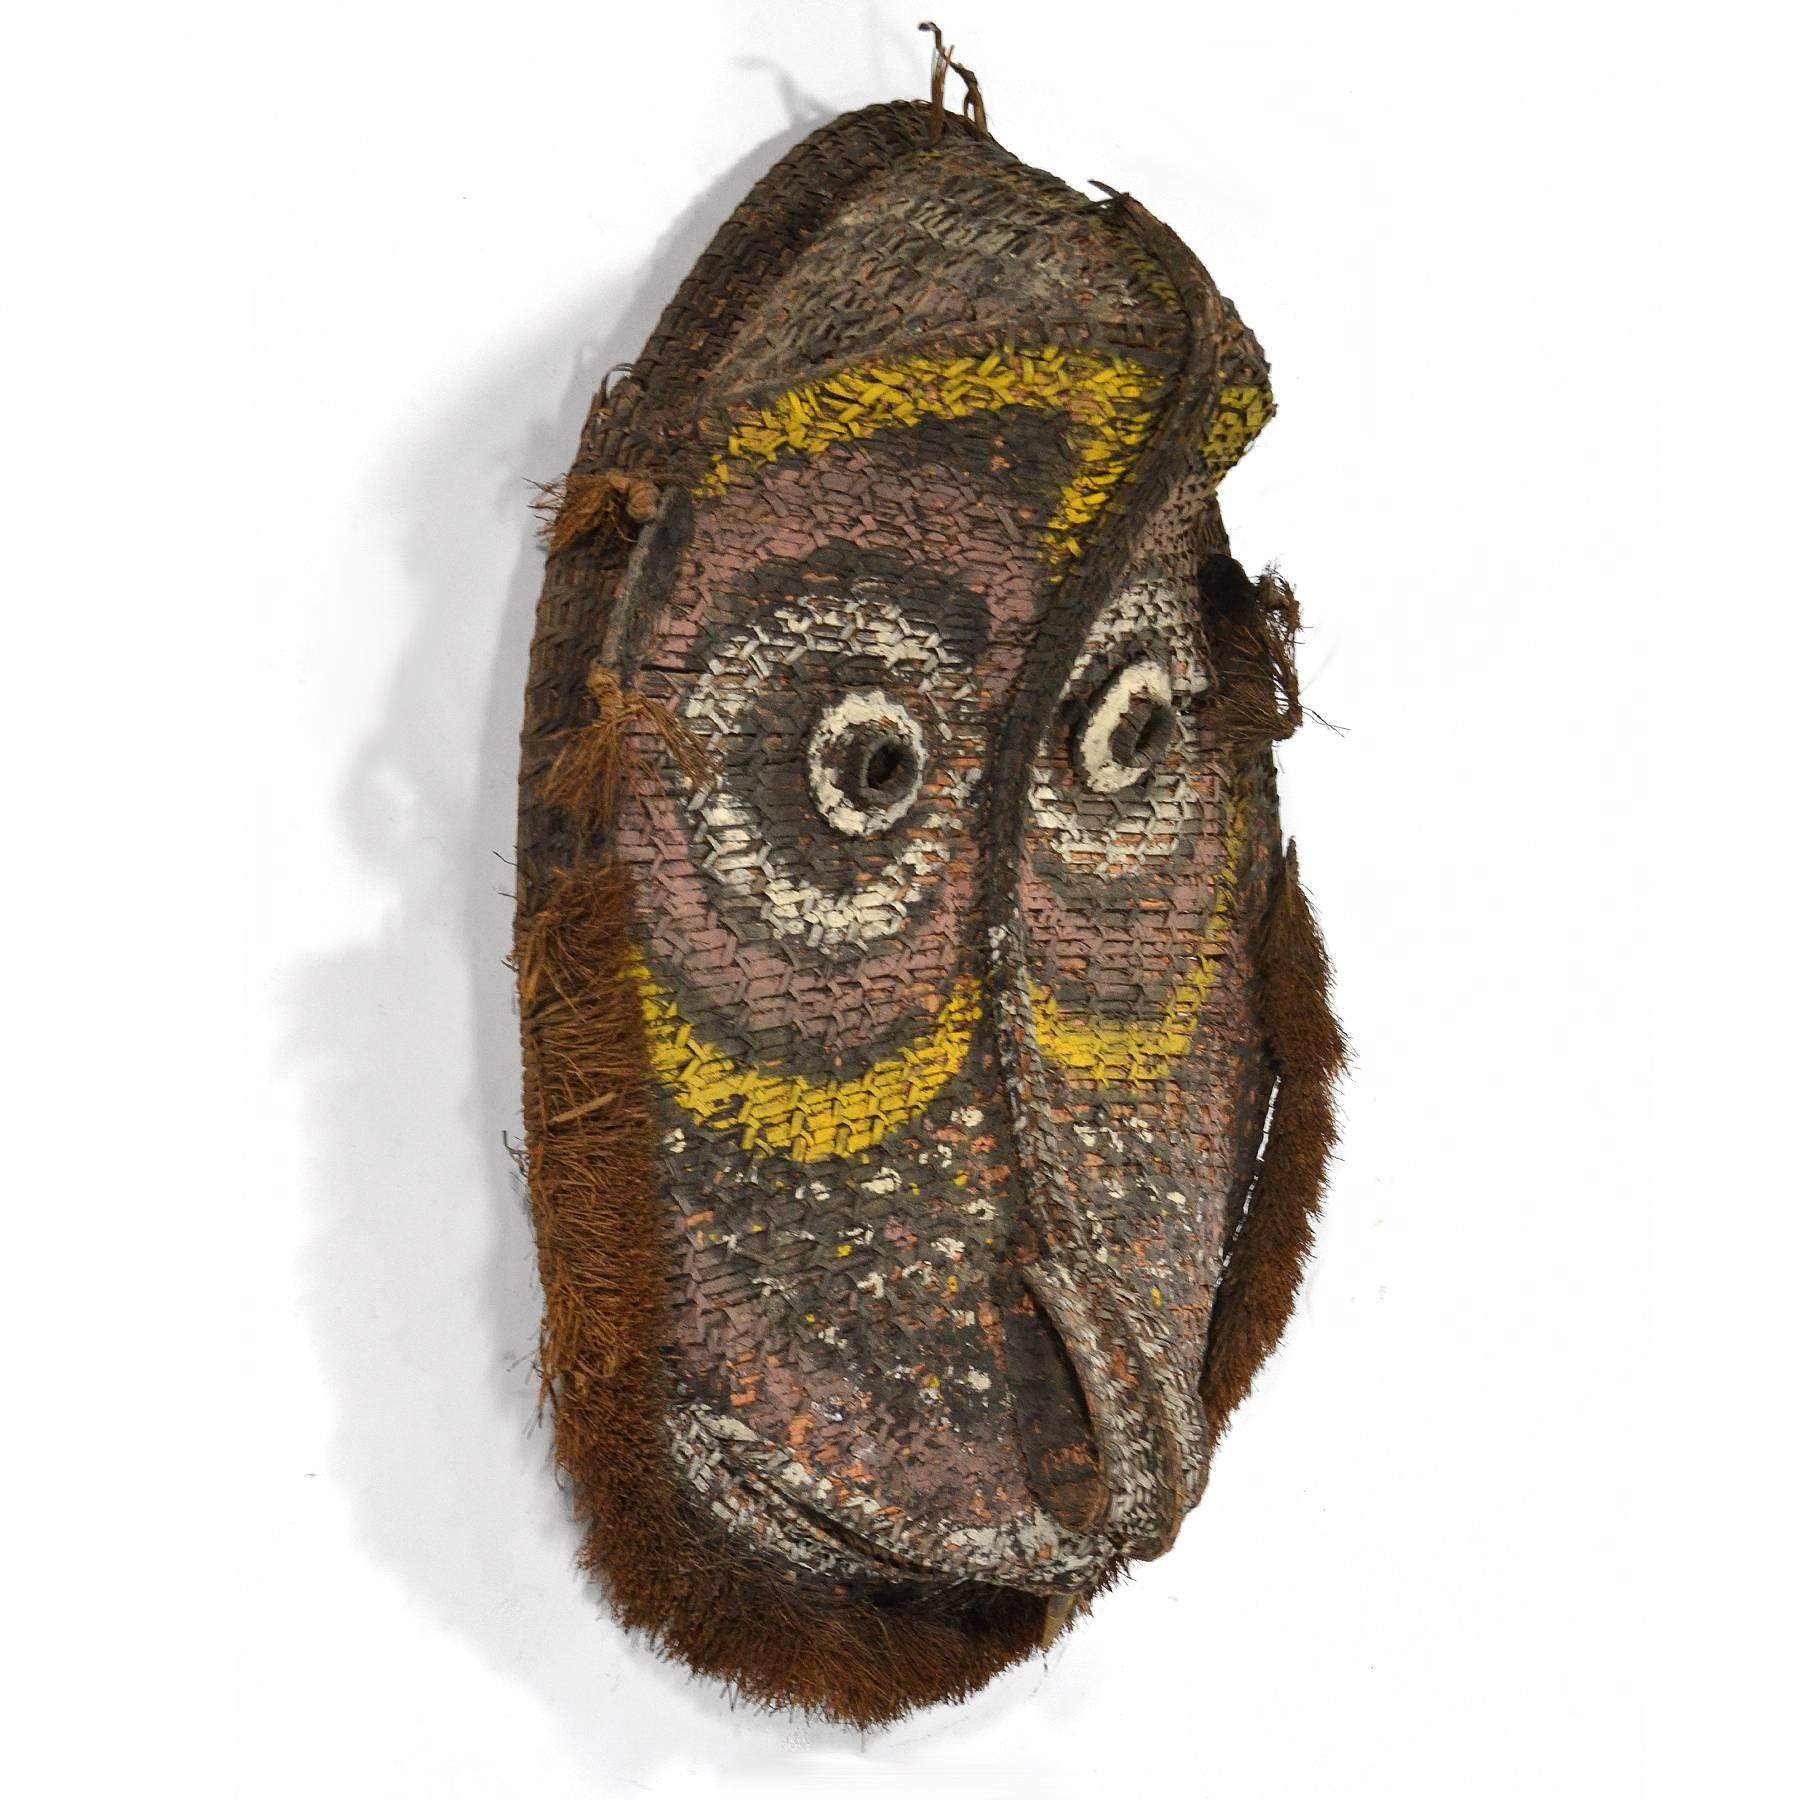 Diese schöne und große Maske ist ein Beispiel für ozeanische Kunst und wurde am Giebel eines Versammlungshauses der mittleren Sepik verwendet. Die ausdrucksstarke Form wird mit natürlichen Pigmenten akzentuiert.
Provenienz: Sammlung von Edwin und